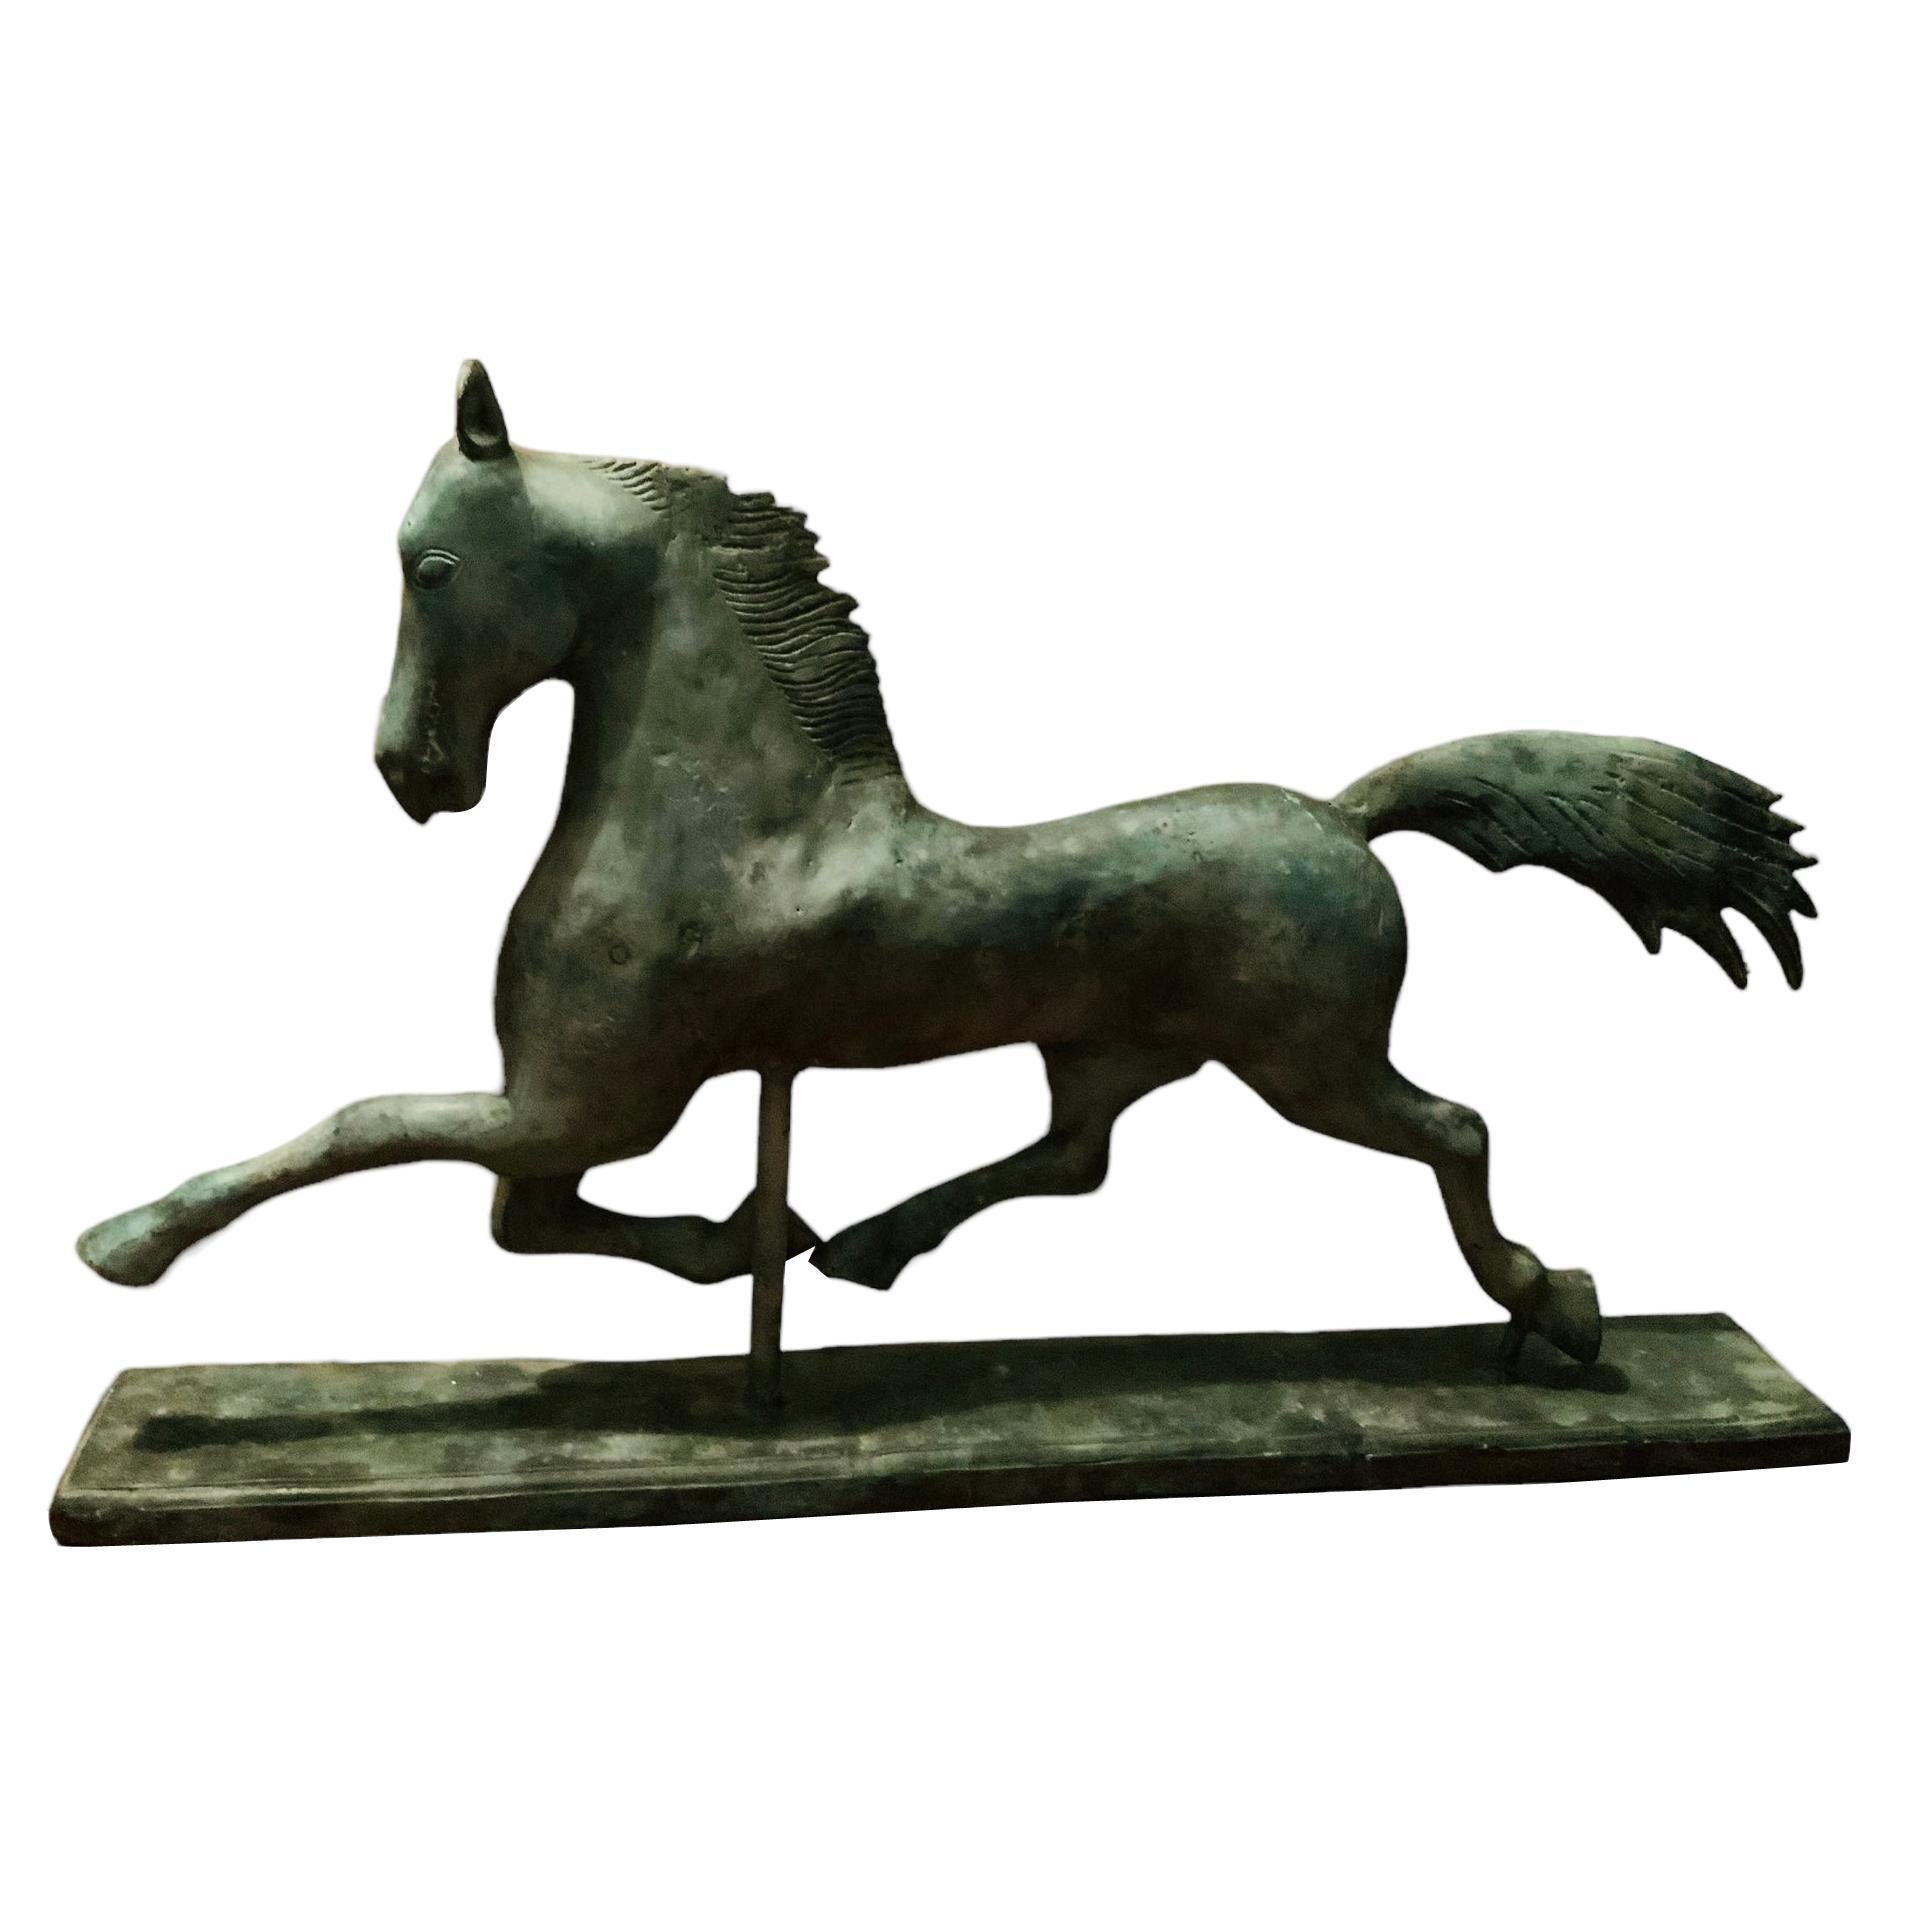 Grande et lourde sculpture en métal patiné d'un cheval en train de boarder